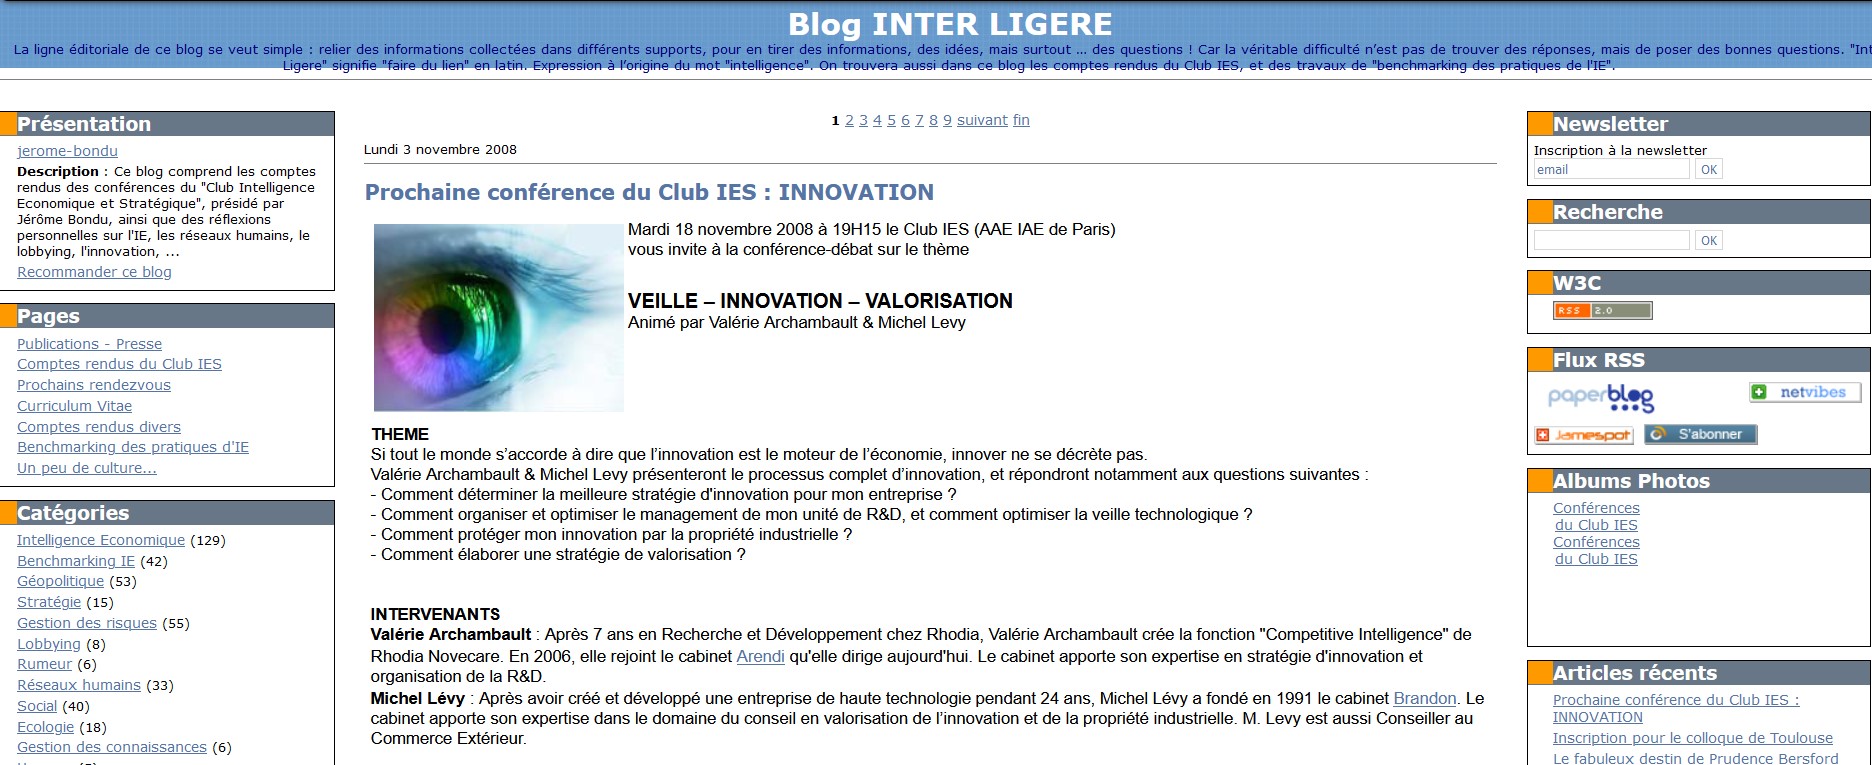 blog inter-ligere